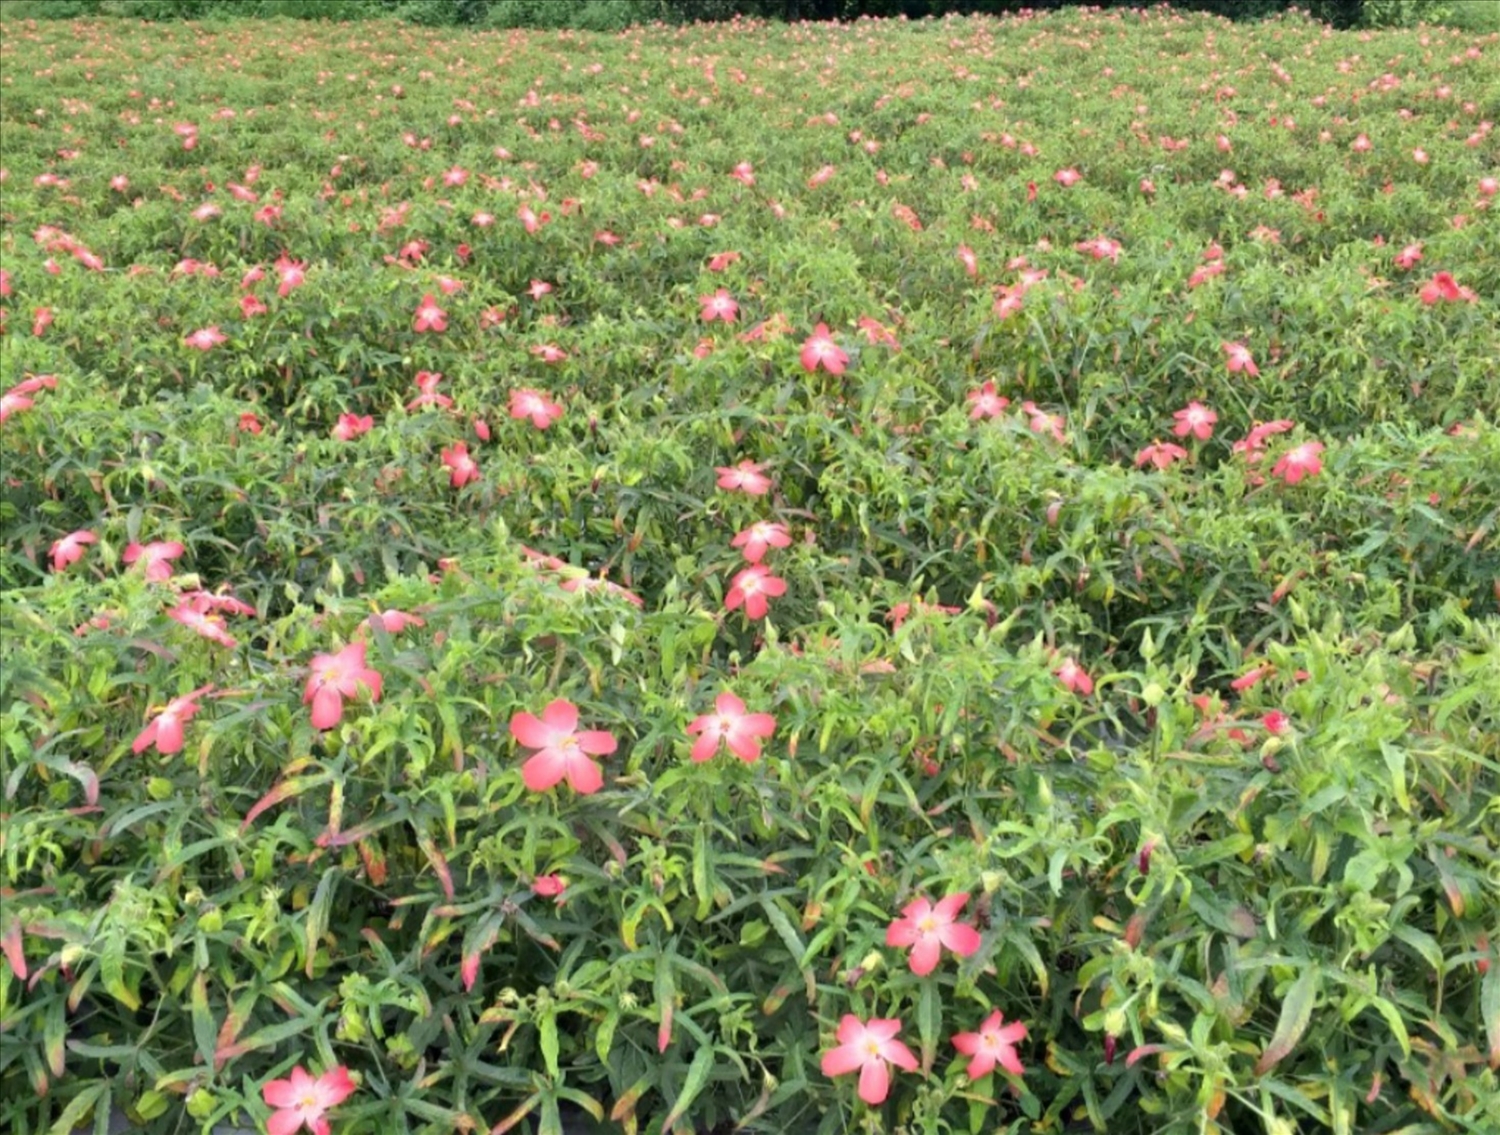 Sâm bố chính được trồng tại xã Quảng Sơn, huyện Đắk Glong cho sản lượng cao, chất lượng tốt.